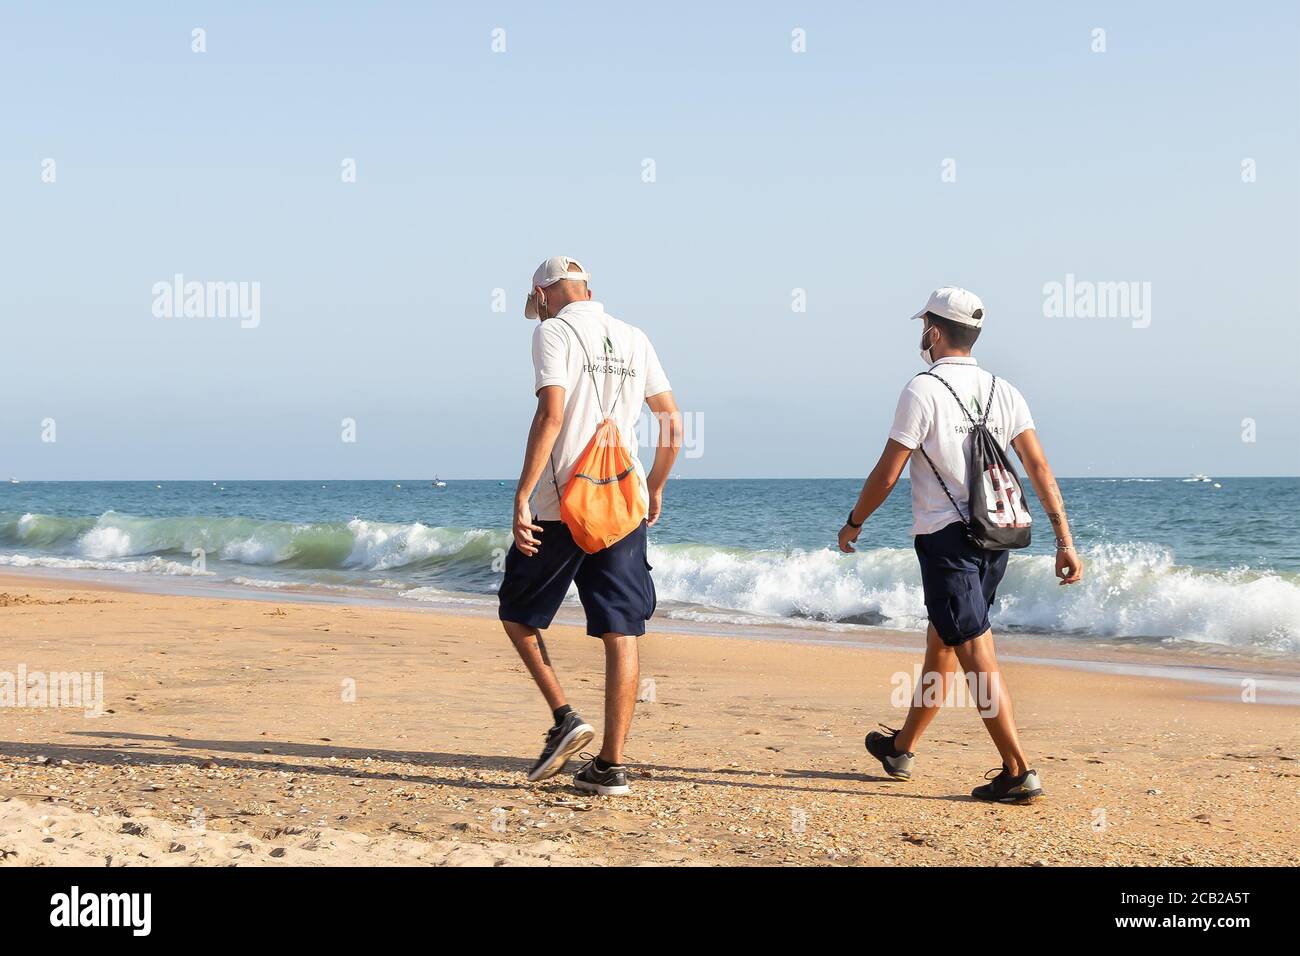 Punta Umbria, Huelva, Spanien - 7. August 2020: Die Strandwache der Junta de Andalucia kontrolliert die soziale Distanzierung und den Einsatz von Schutzmaske Stockfoto